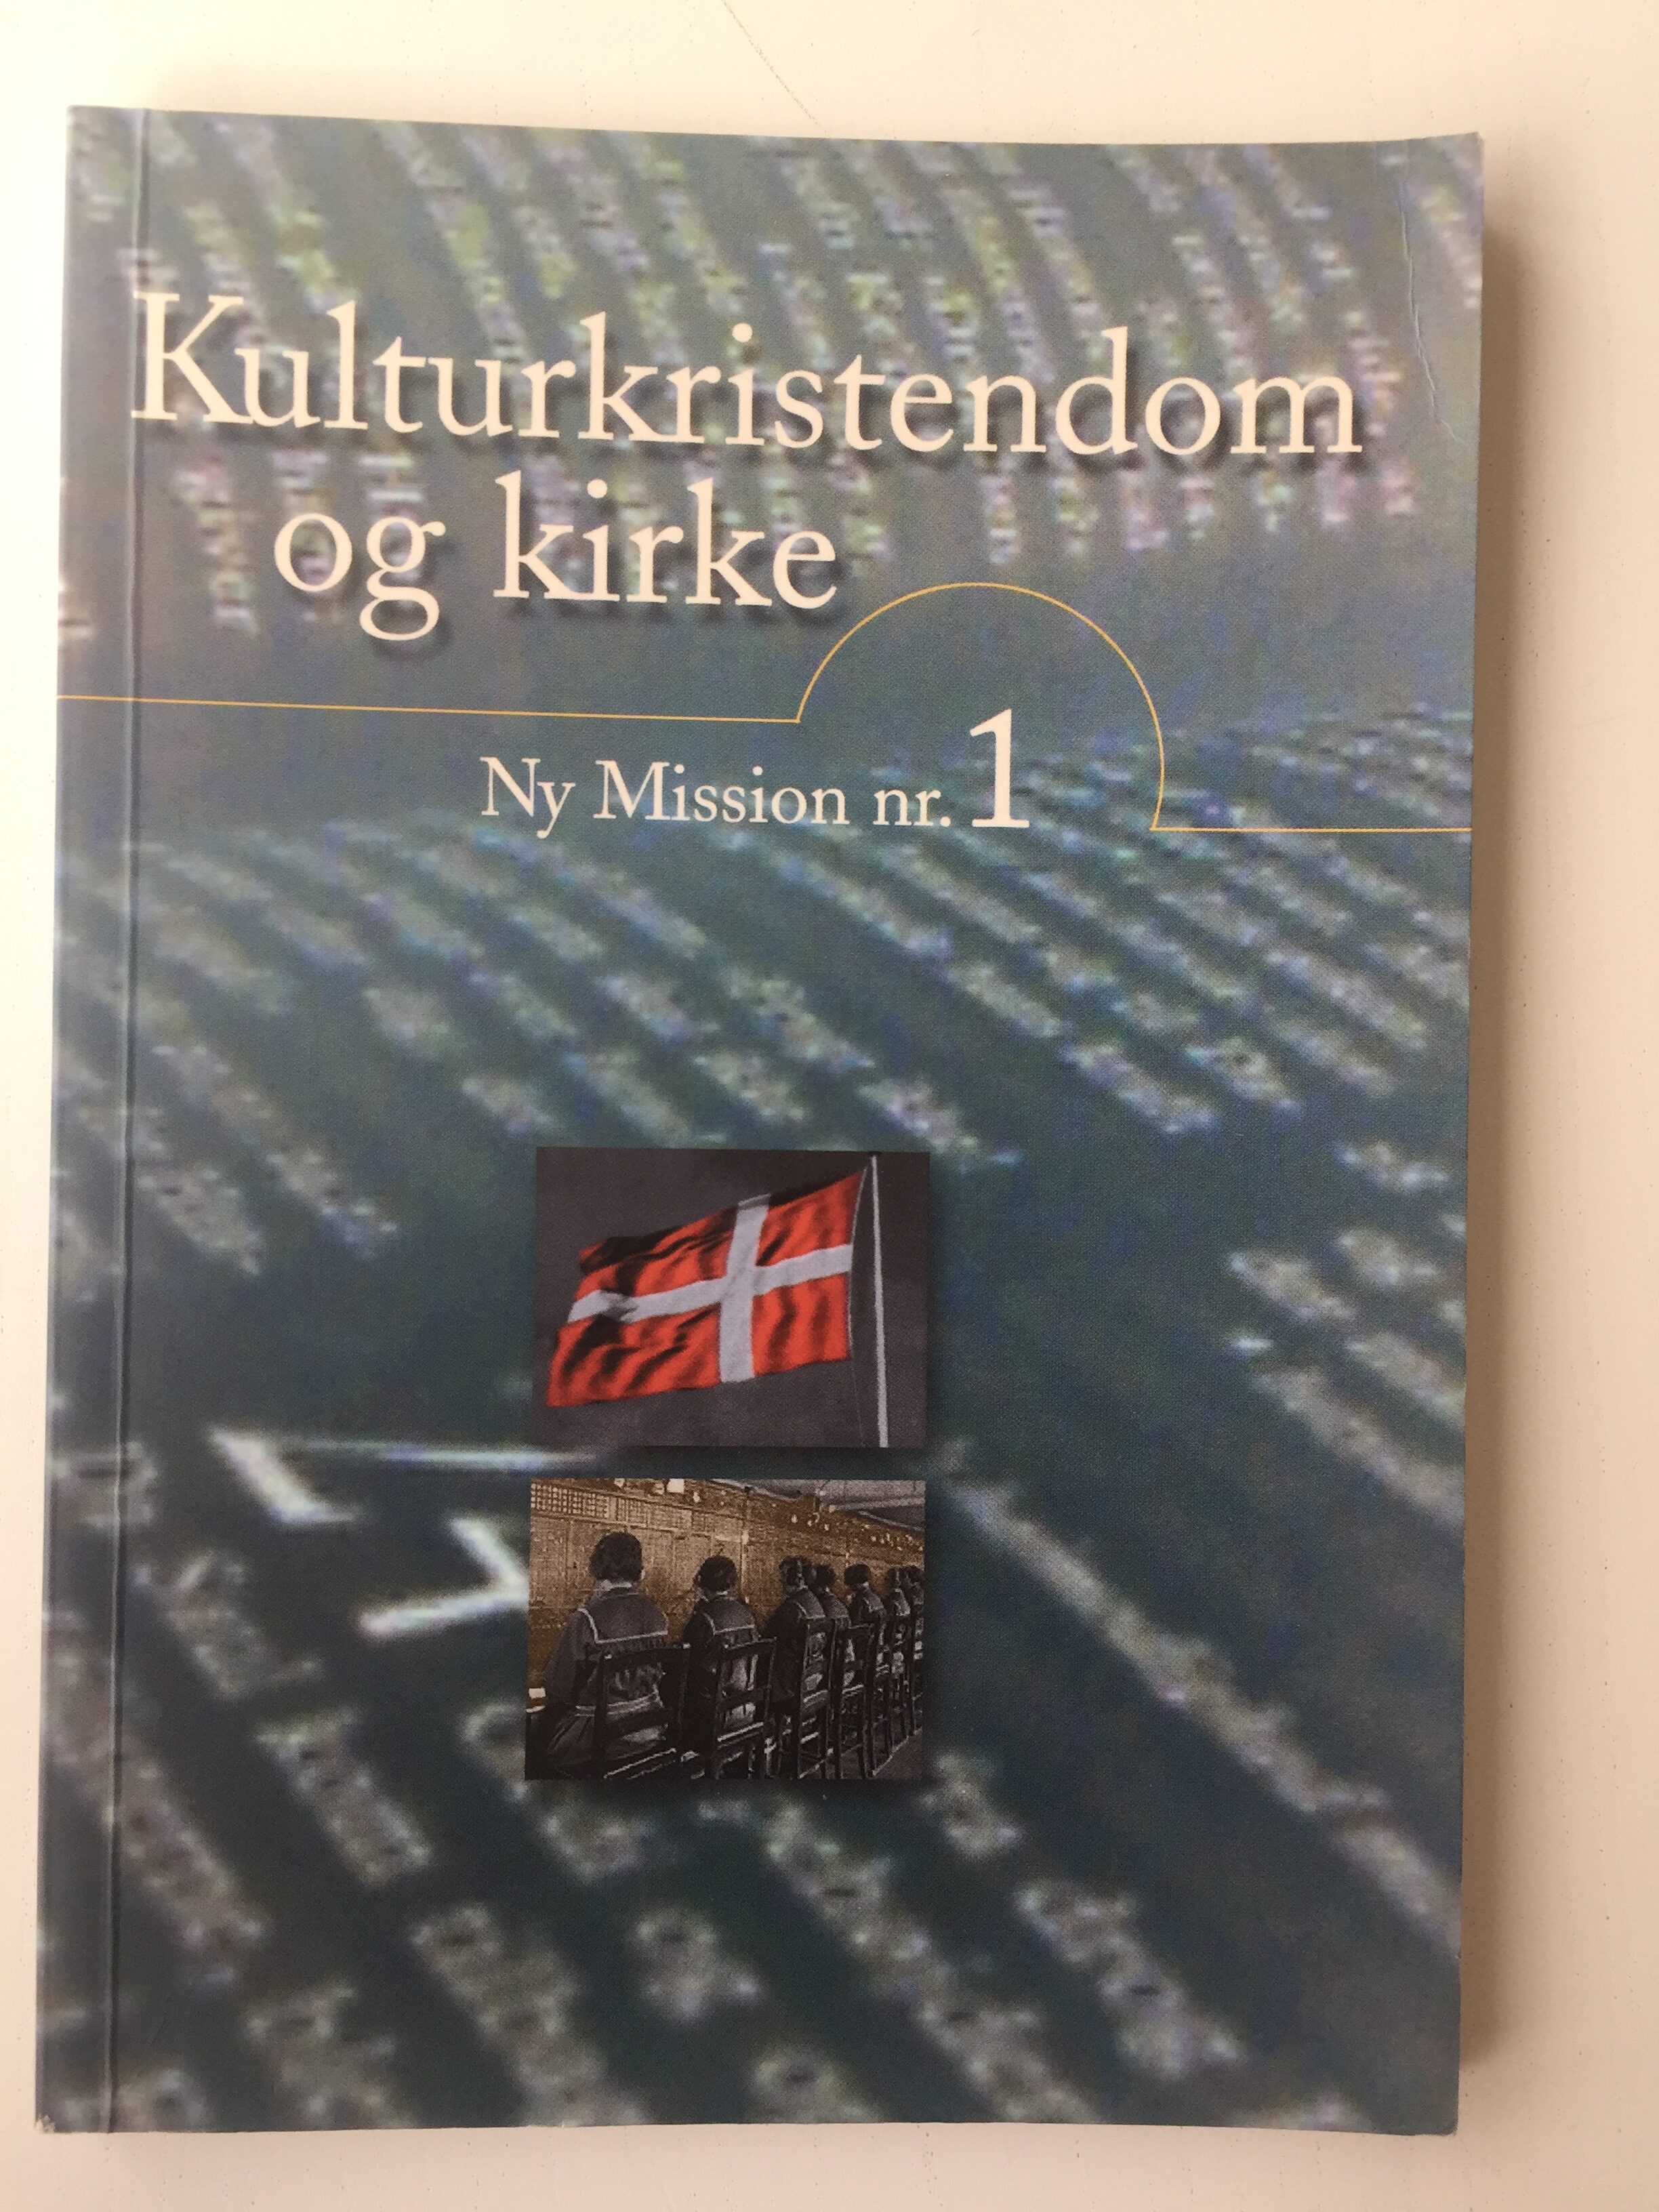 Køb "Kulturkristendom og kirke 1999" (forside)